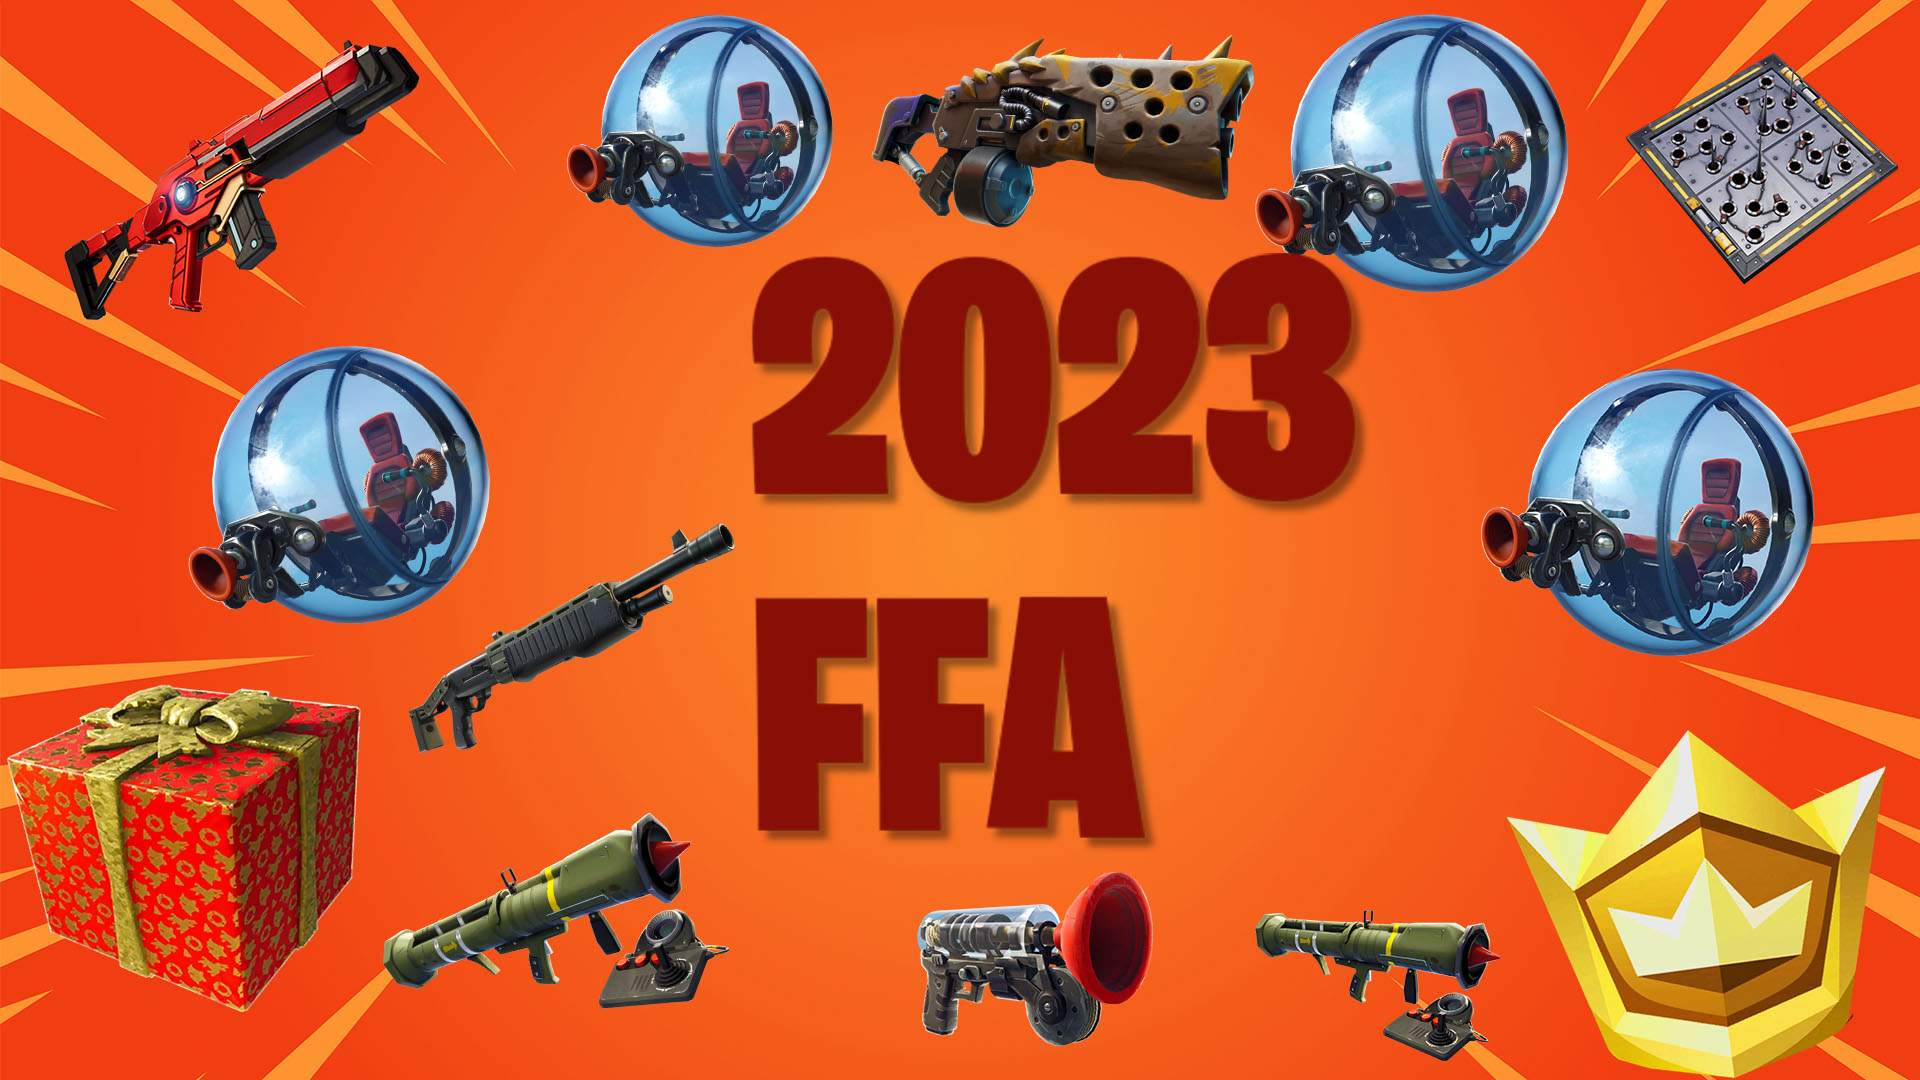 2023 - FFA